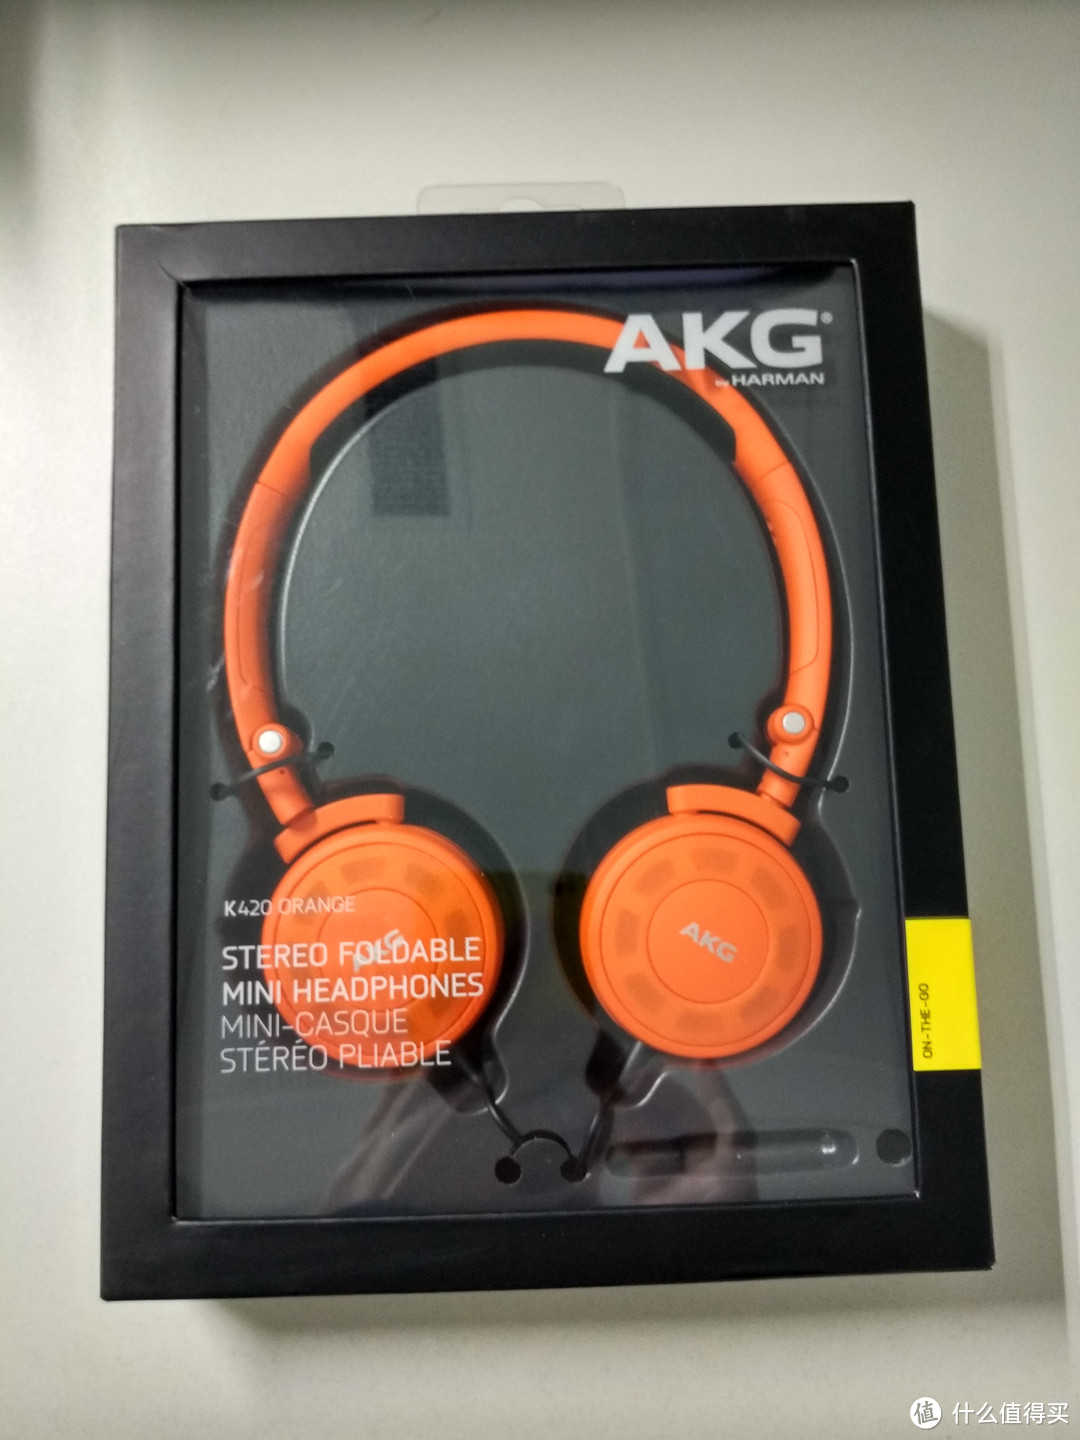 入手荷兰队球衣主题色经典款 — AKG 爱科技 K420 开放式头戴耳机 开箱